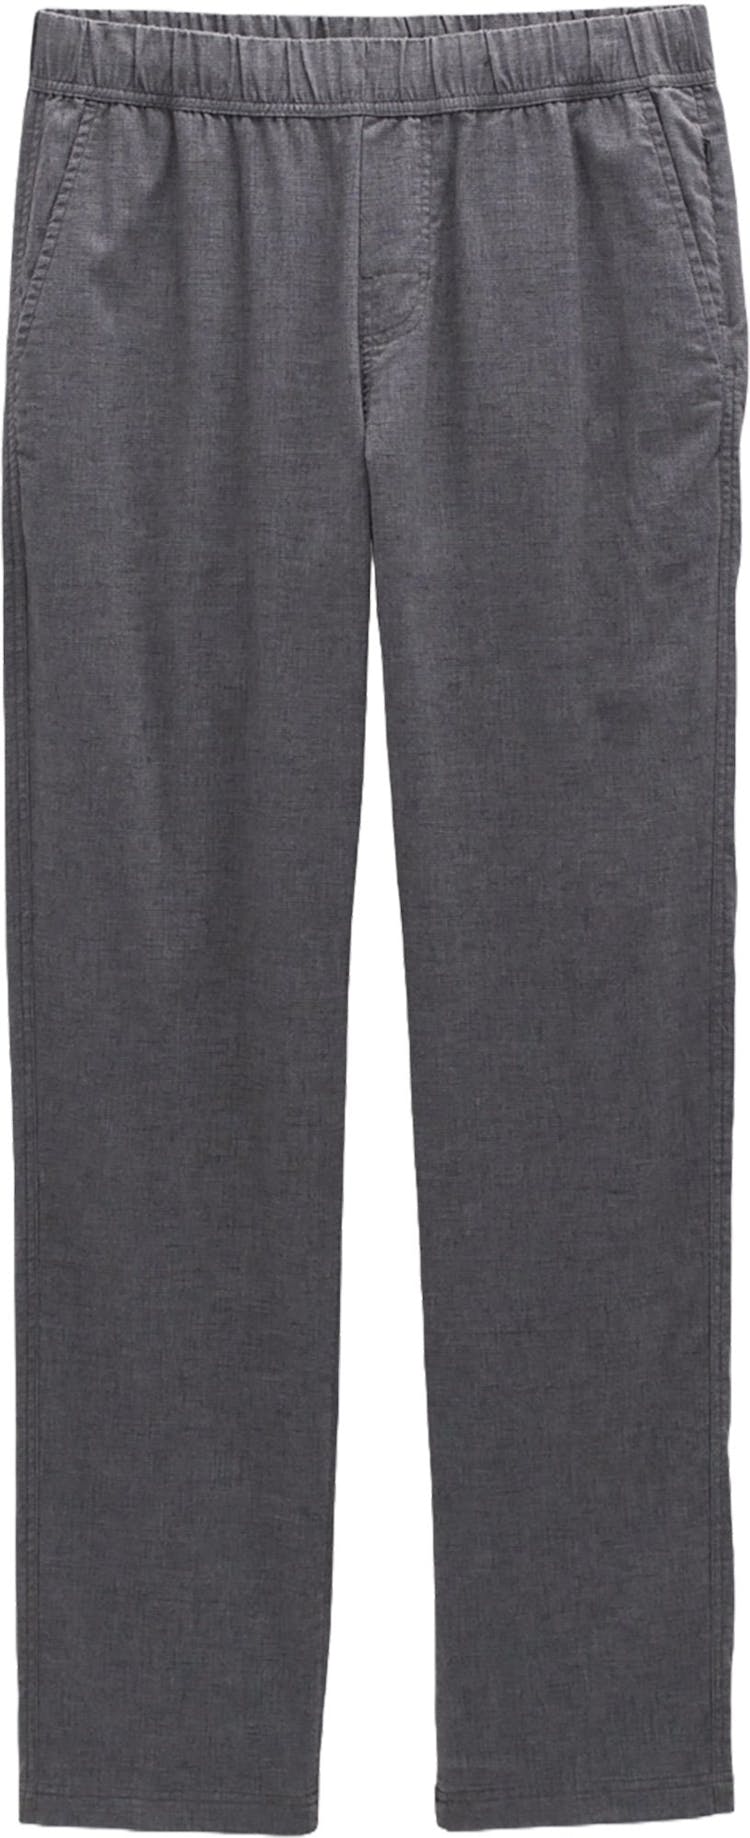 Numéro de l'image de la galerie de produits 1 pour le produit Pantalon à taille élastique Vaha - Homme